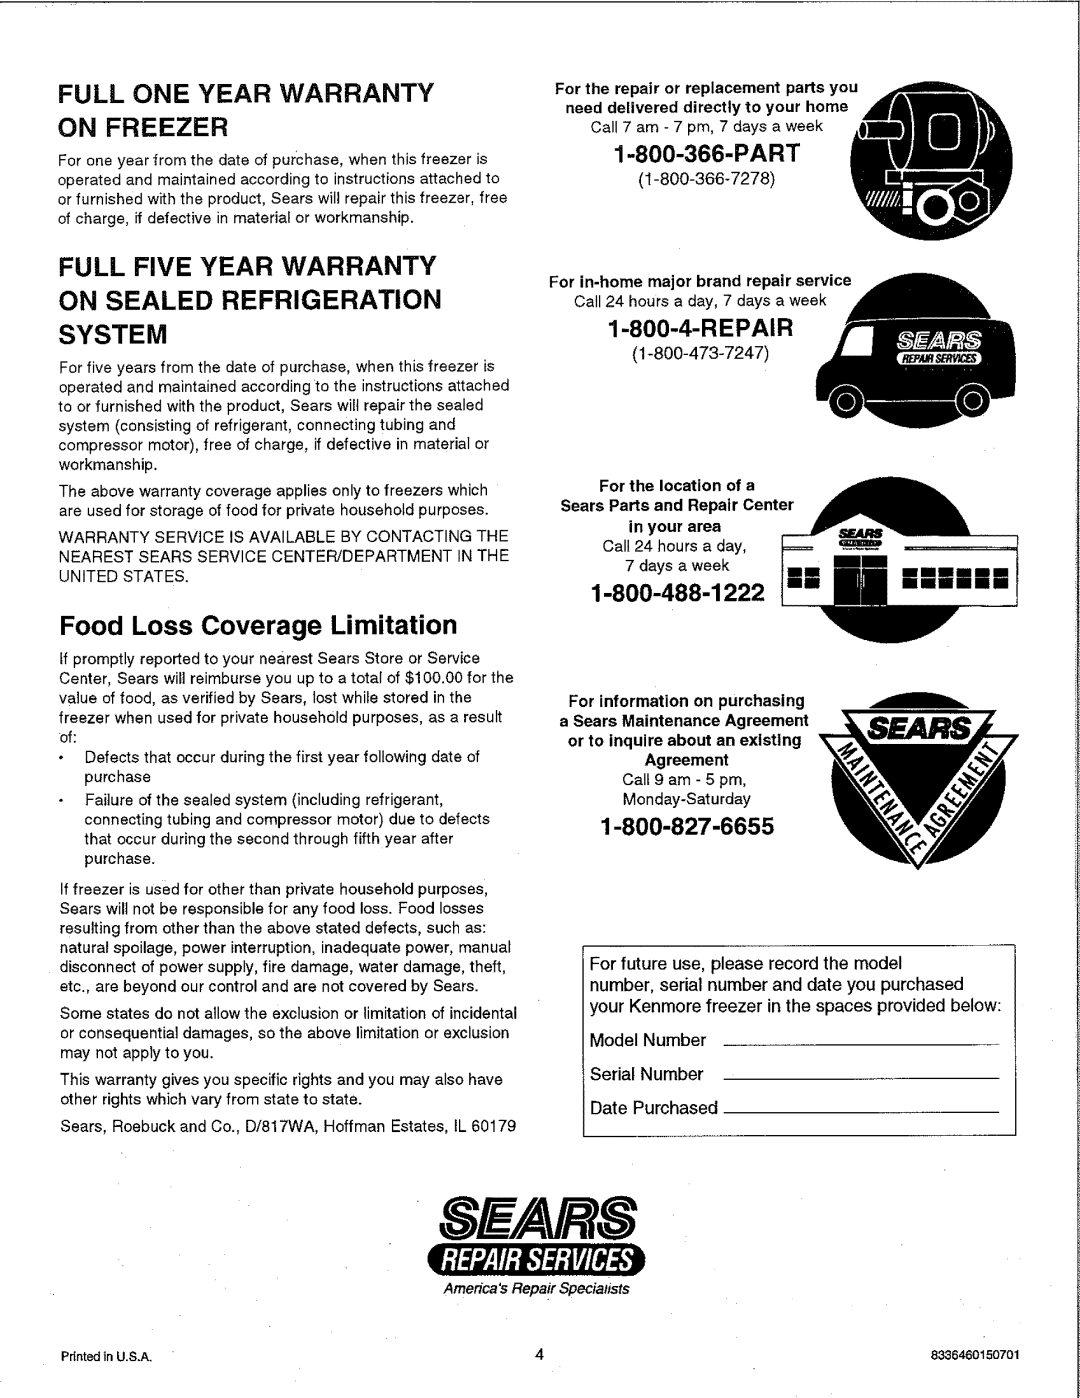 Kenmore 23501 Part, Repair, 8E/.4VRS, Full One Year Warranty On Freezer, Full Five Year Warranty On Sealed Refrigeration 